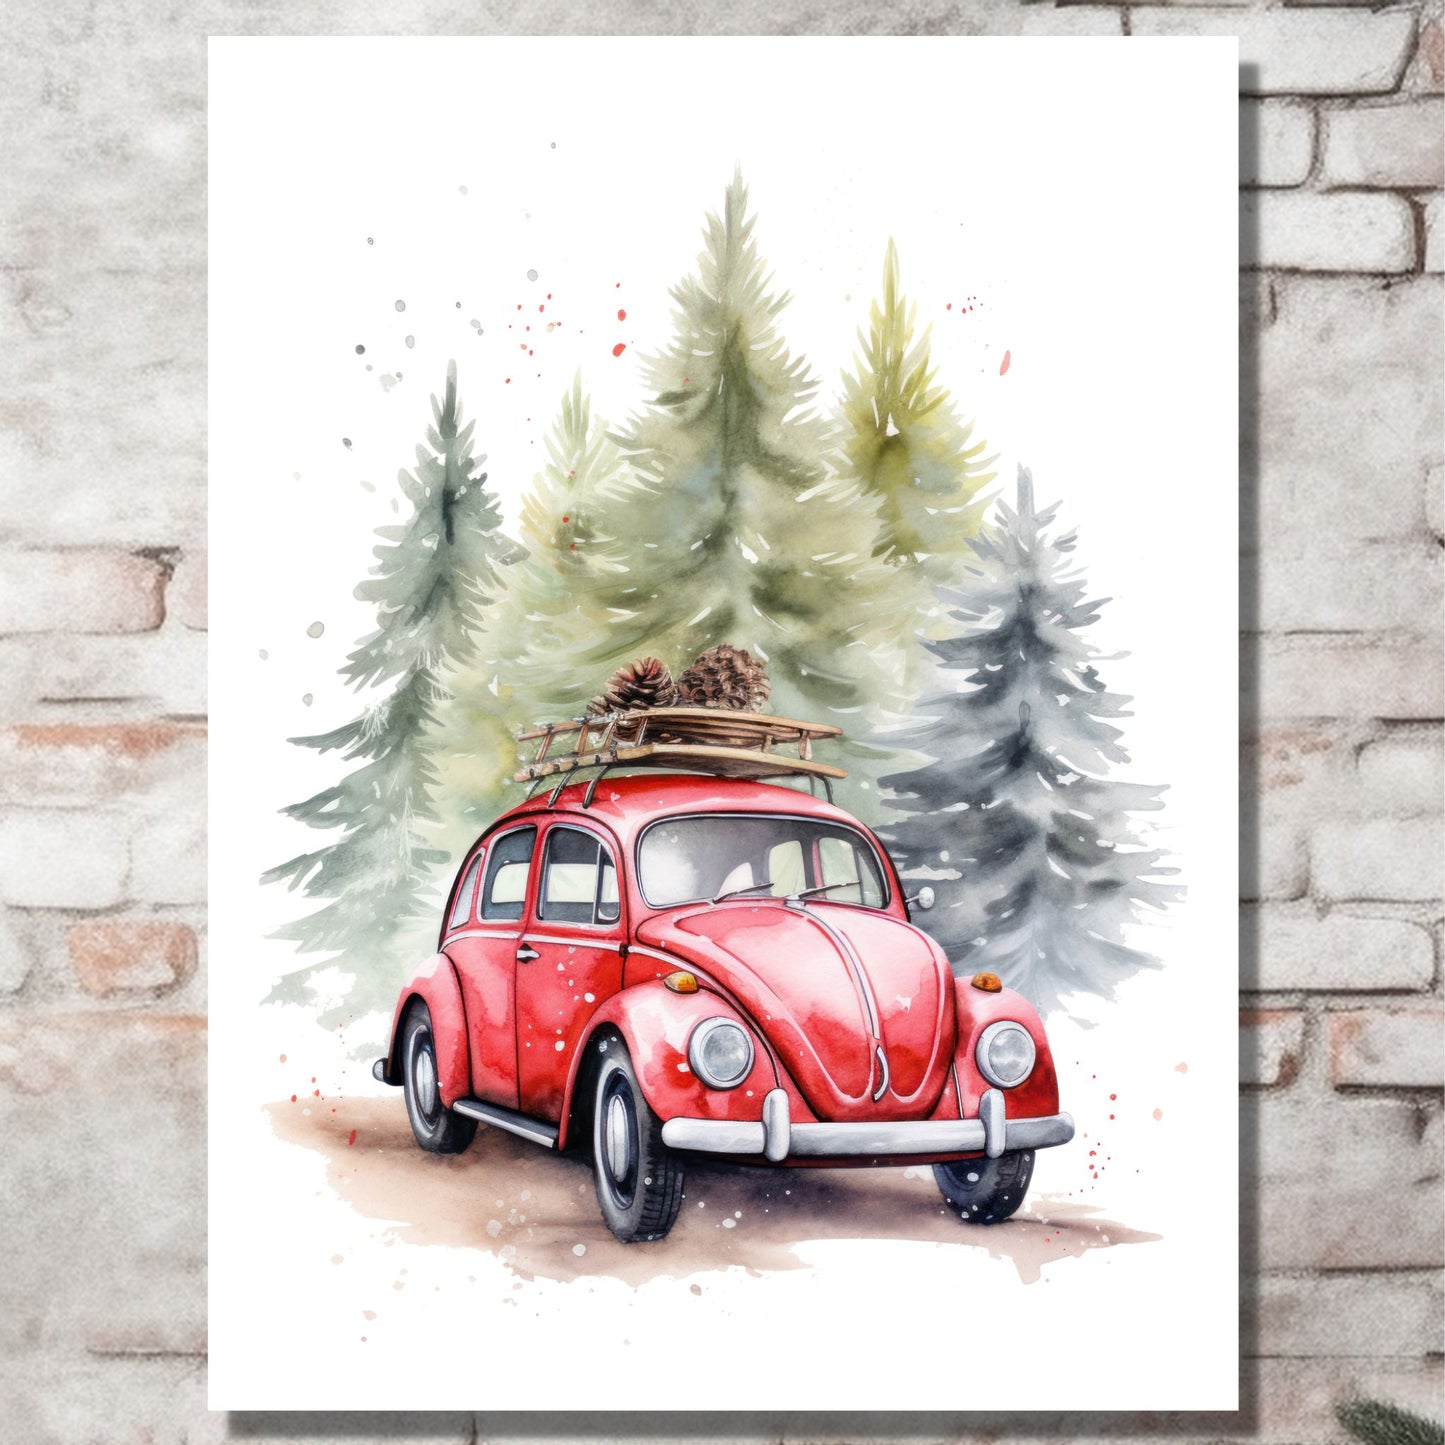 Plakat og lerret med grafisk julemotiv av gammel, rød volkswagen boble. Bilen kjører i en skog, og på taket er den lastet med furukongler. På bildet henger motivet på lerret på en murvegg.